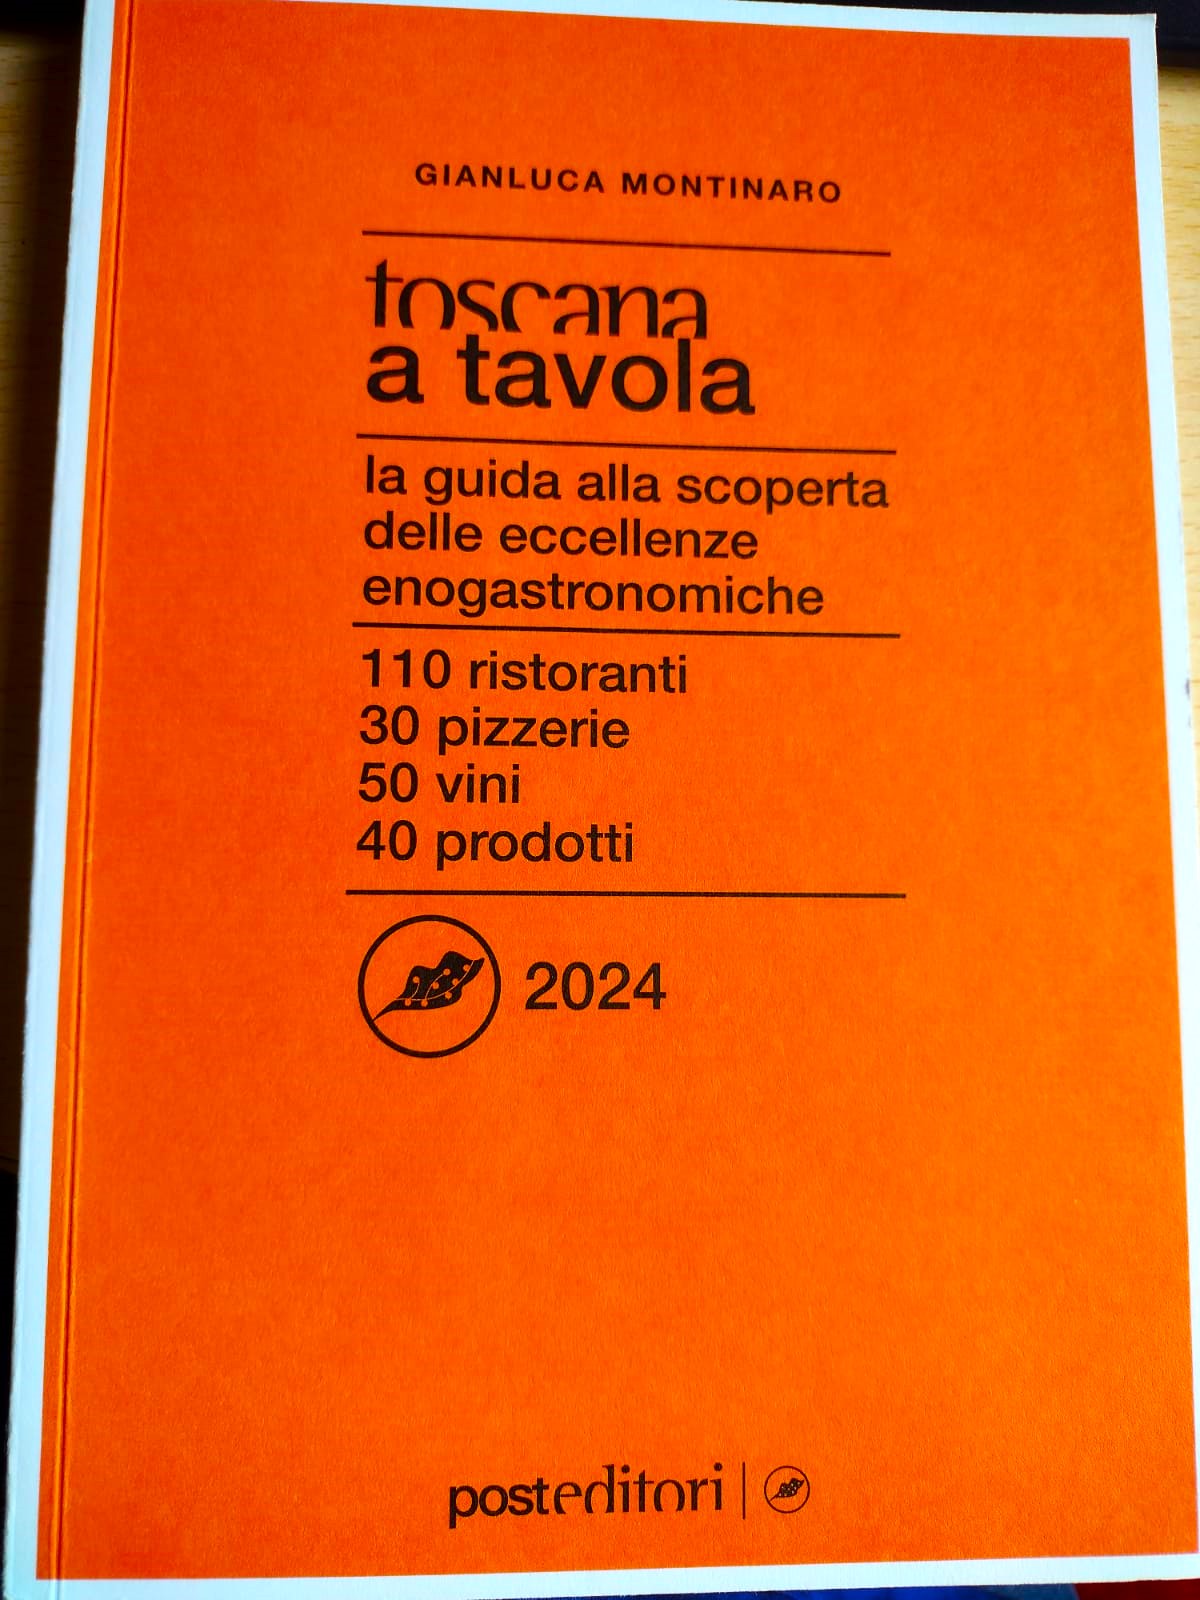 Agroalimentare, esce la Guida Toscana a Tavola 2024. Presentazione alle 10.30